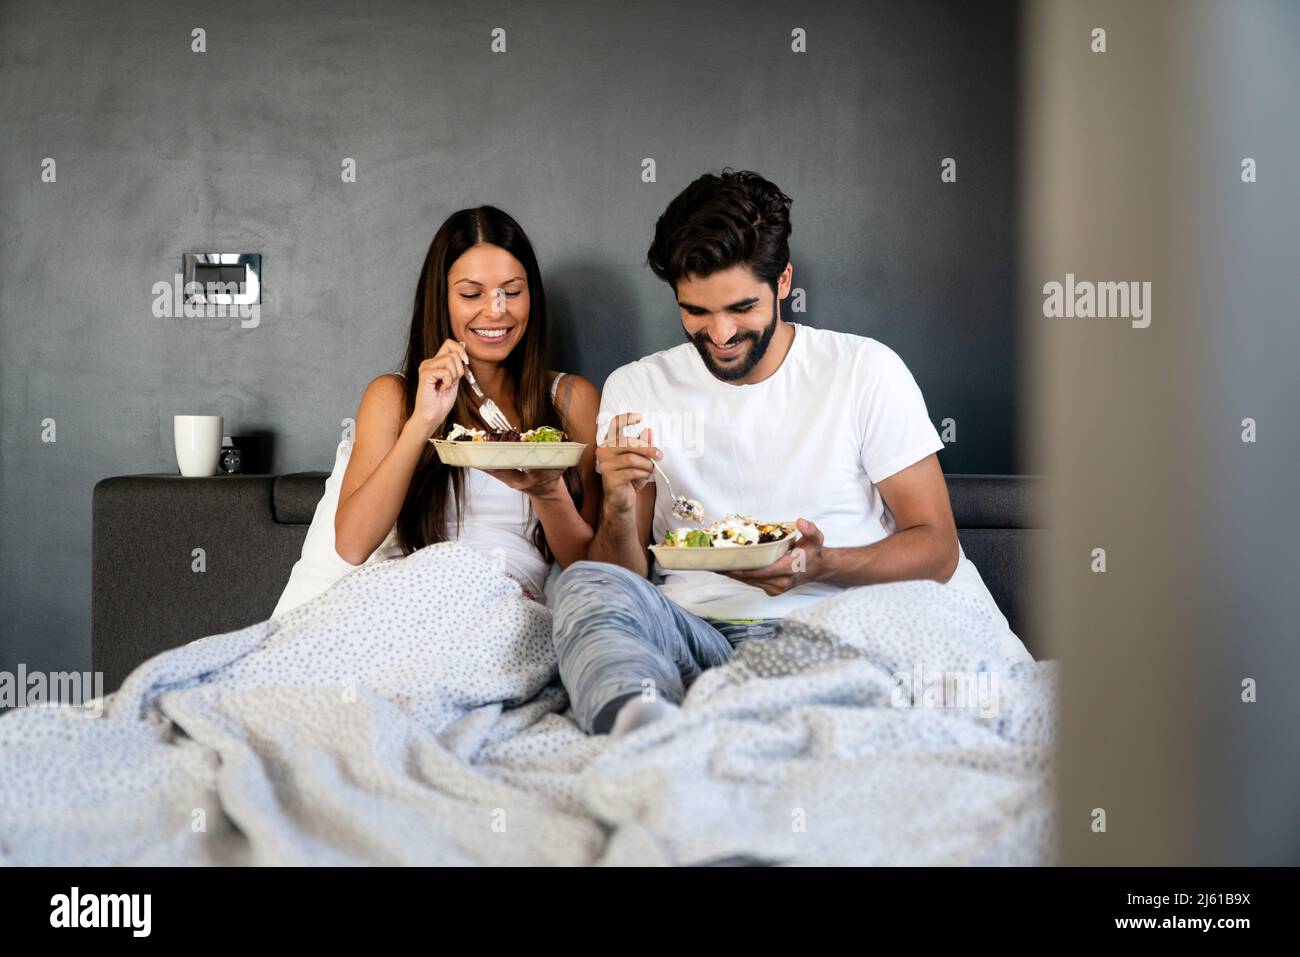 Gesundes Frühstück im Bett. Junge schöne Paar in der Liebe verbringen Zeit zusammen. Guten Morgen. Stockfoto